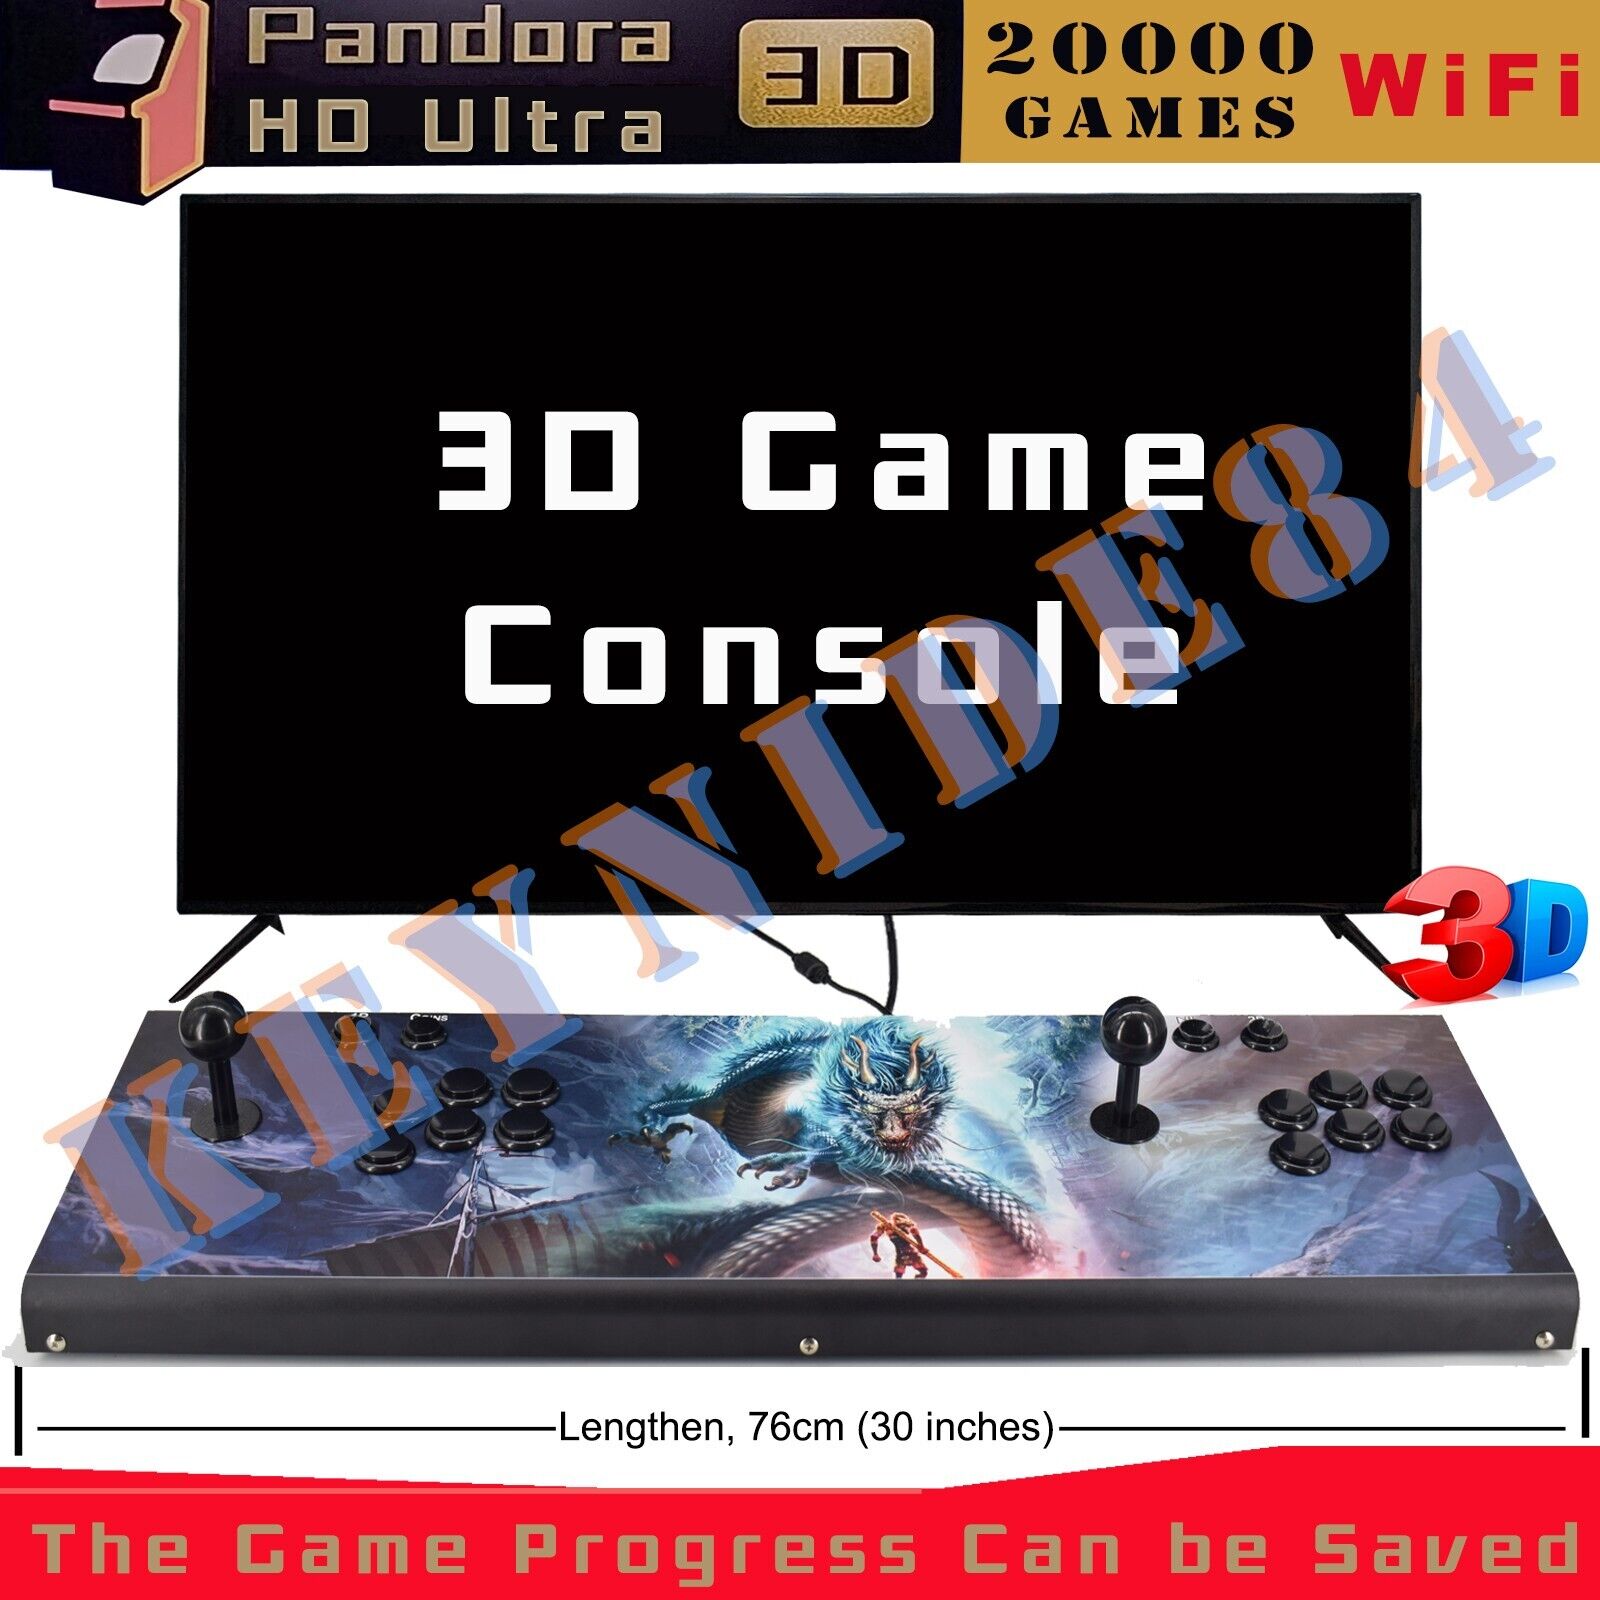 NEW Retro Video 3D WiFi ALL Metal Lengthen 20000 Games Pandora Box Home Arcade